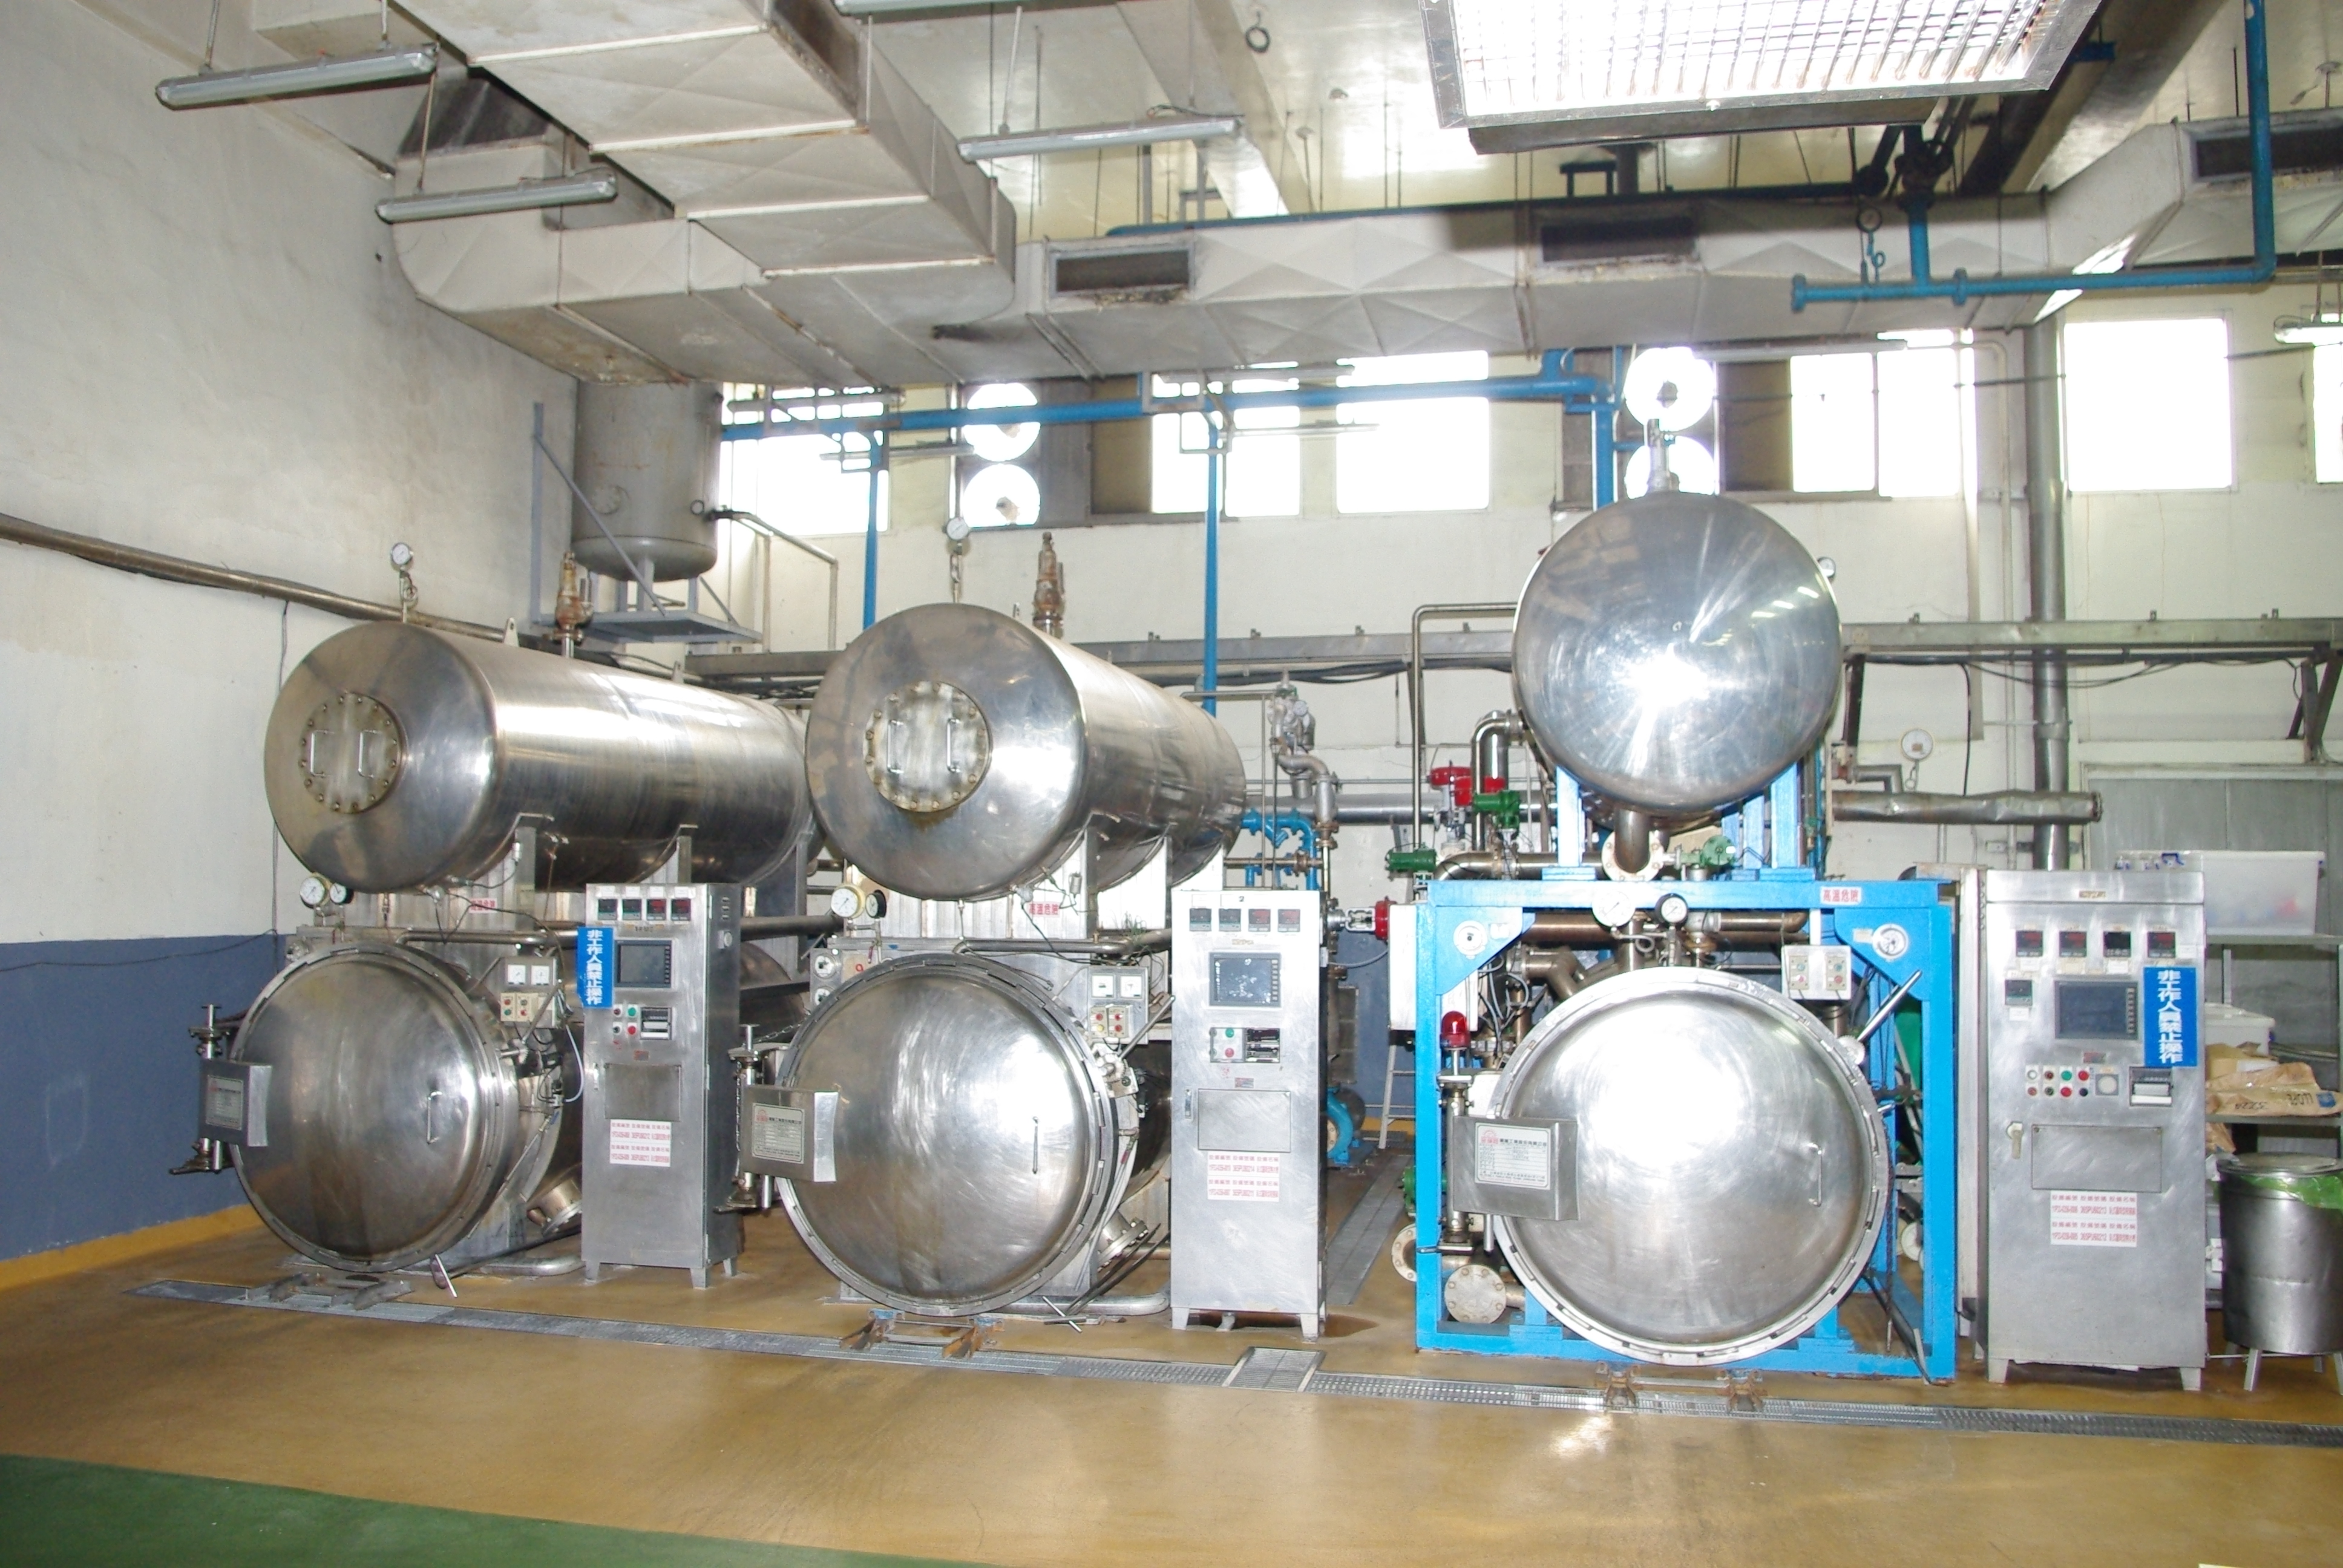 「殺菌釜冷卻水回收系統」可將罐裝處理完的殺菌水回收再利用，降低後段污水處理的負荷